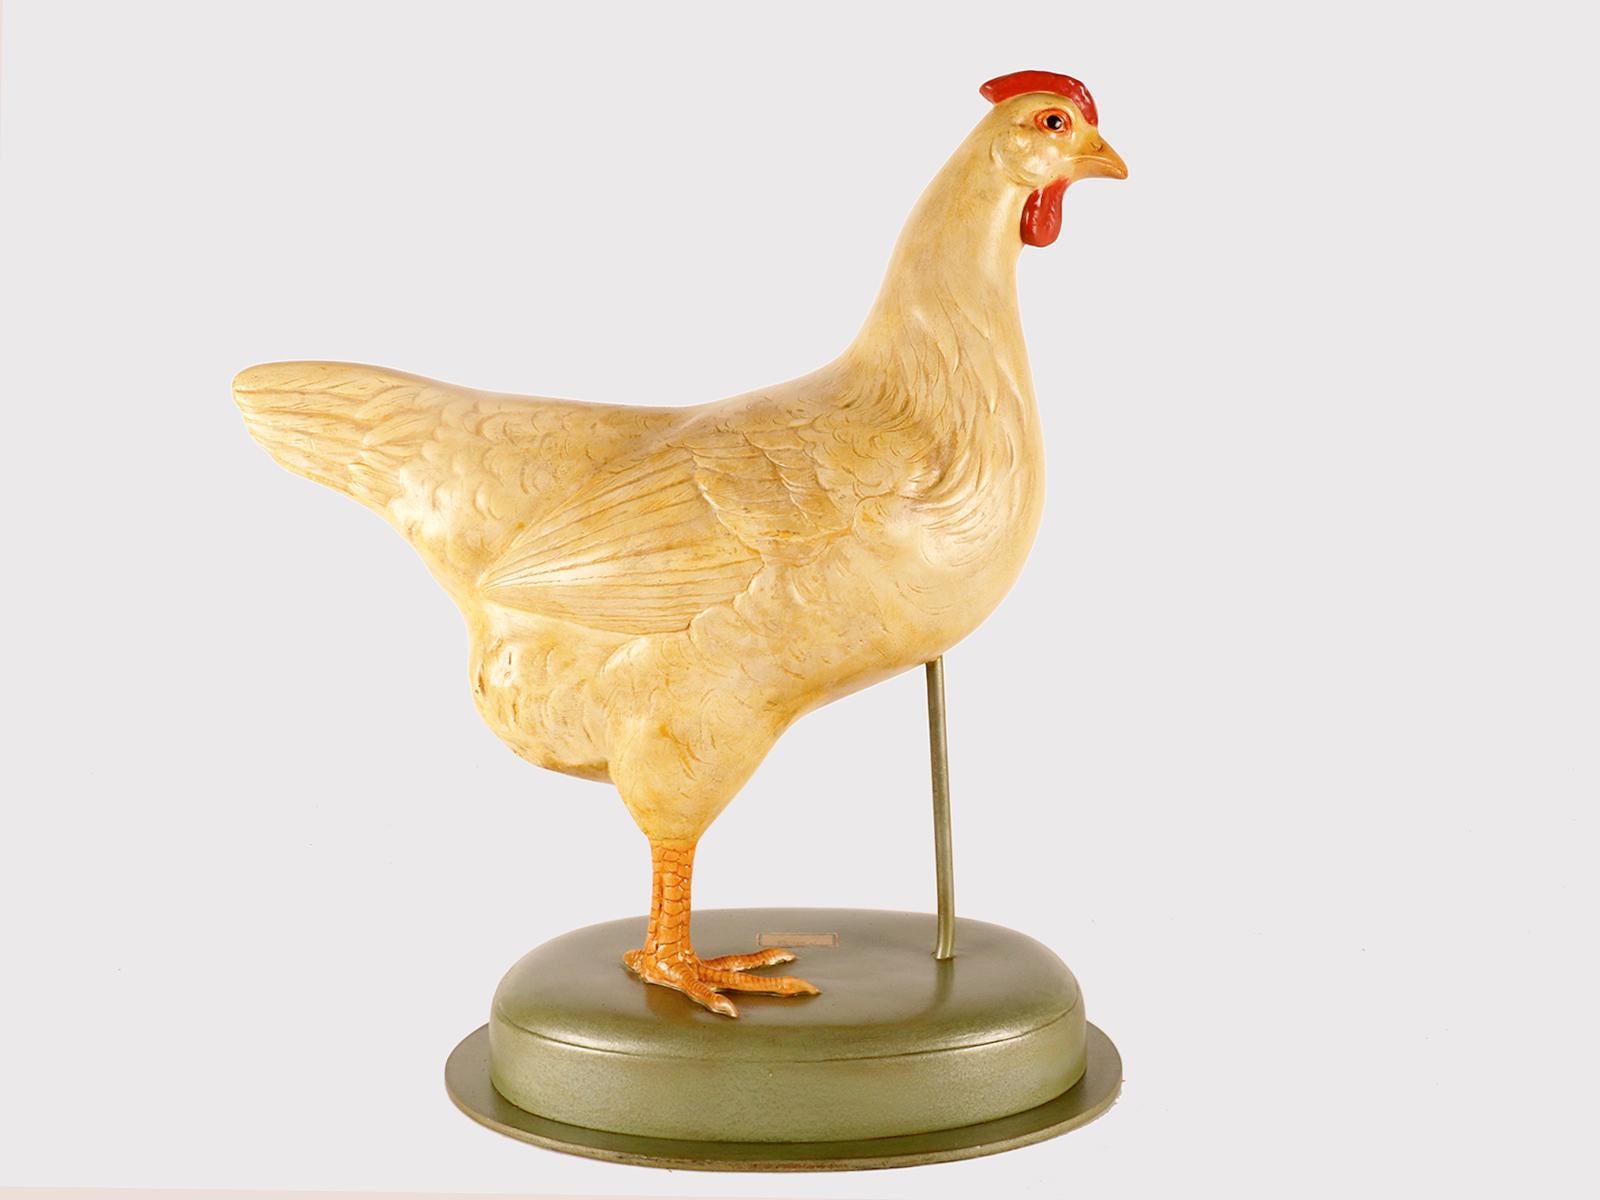 Ein lebensgroßes anatomisches Modell eines Huhns mit trennbaren anatomischen Teilen für den Unterricht. Hergestellt aus bemaltem Gips, Holz- und Metallsockel. Somso, Deutschland, um 1930.